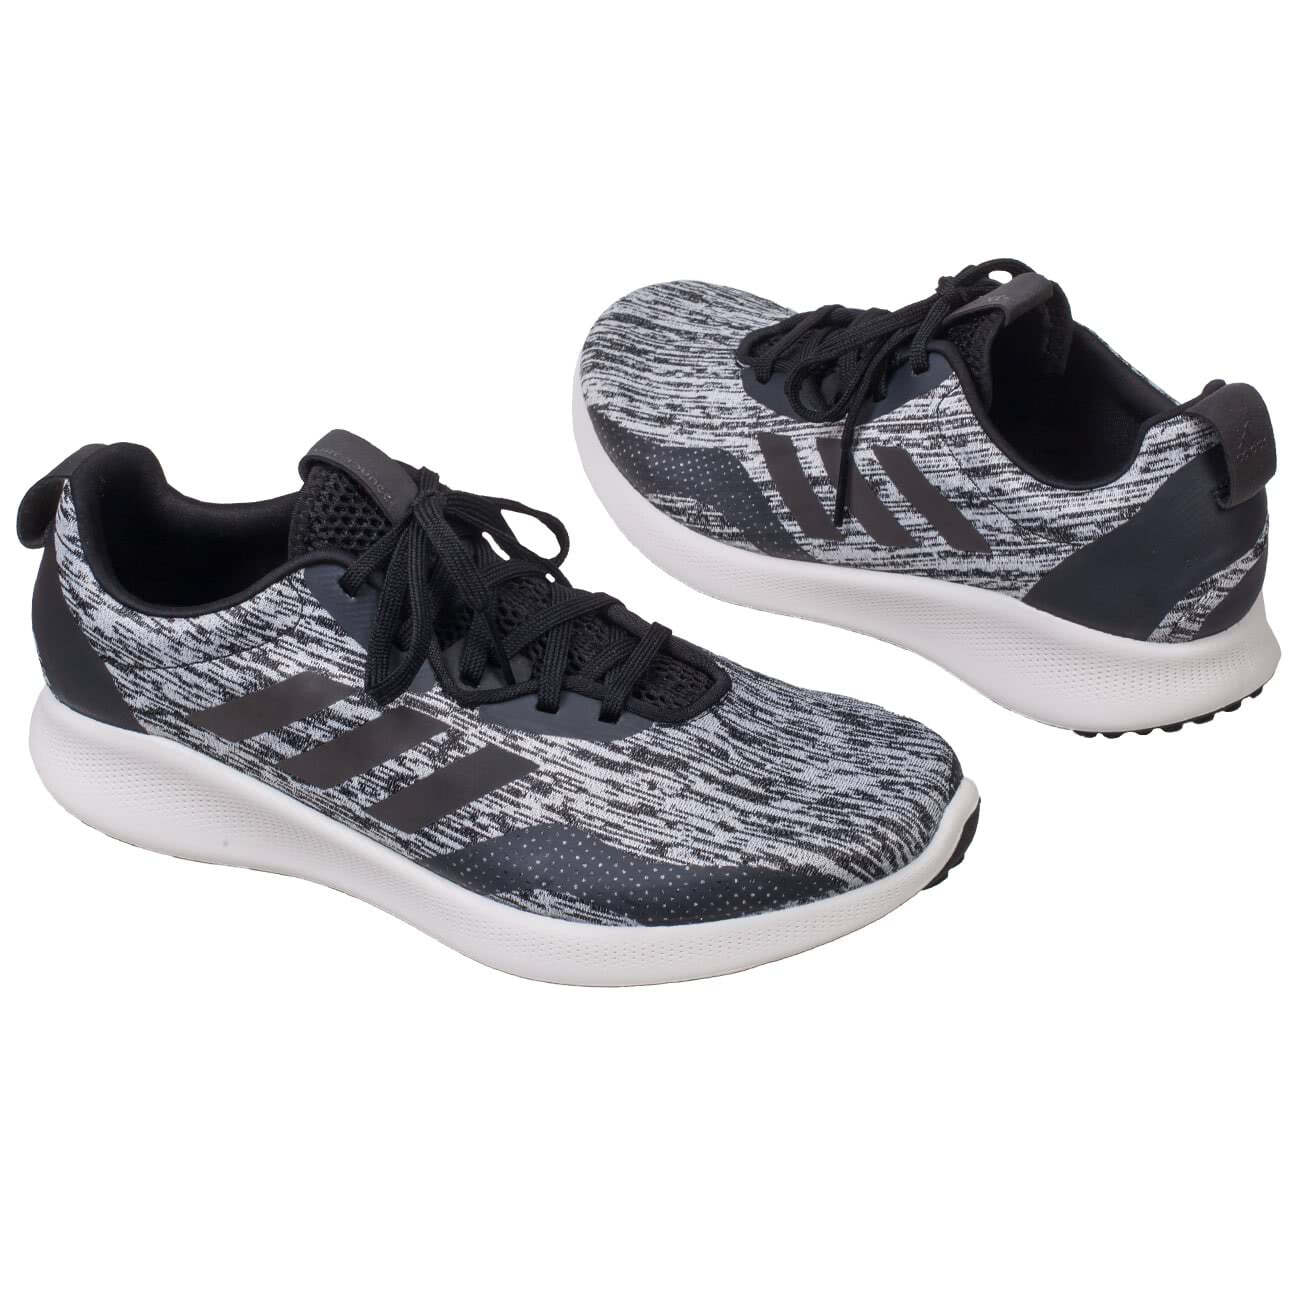 Мужские беговые кроссовки Adidas Purebounce+ серого цвета купить в интернет  магазине Kwinto